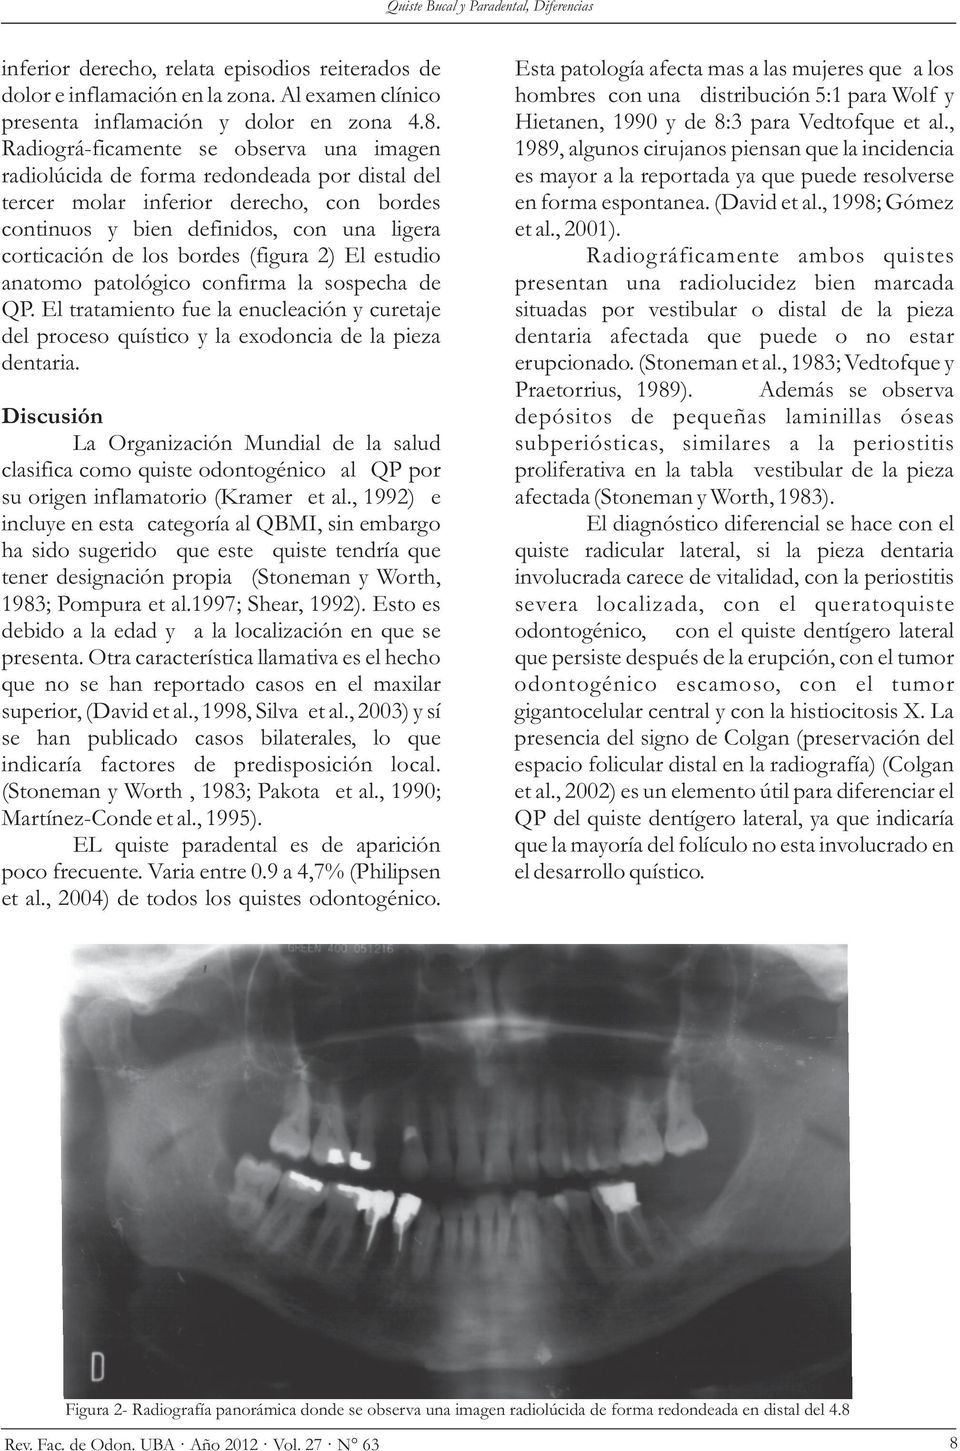 (figura 2) El estudio anatomo patológico confirma la sospecha de QP. El tratamiento fue la enucleación y curetaje del proceso quístico y la exodoncia de la pieza dentaria.